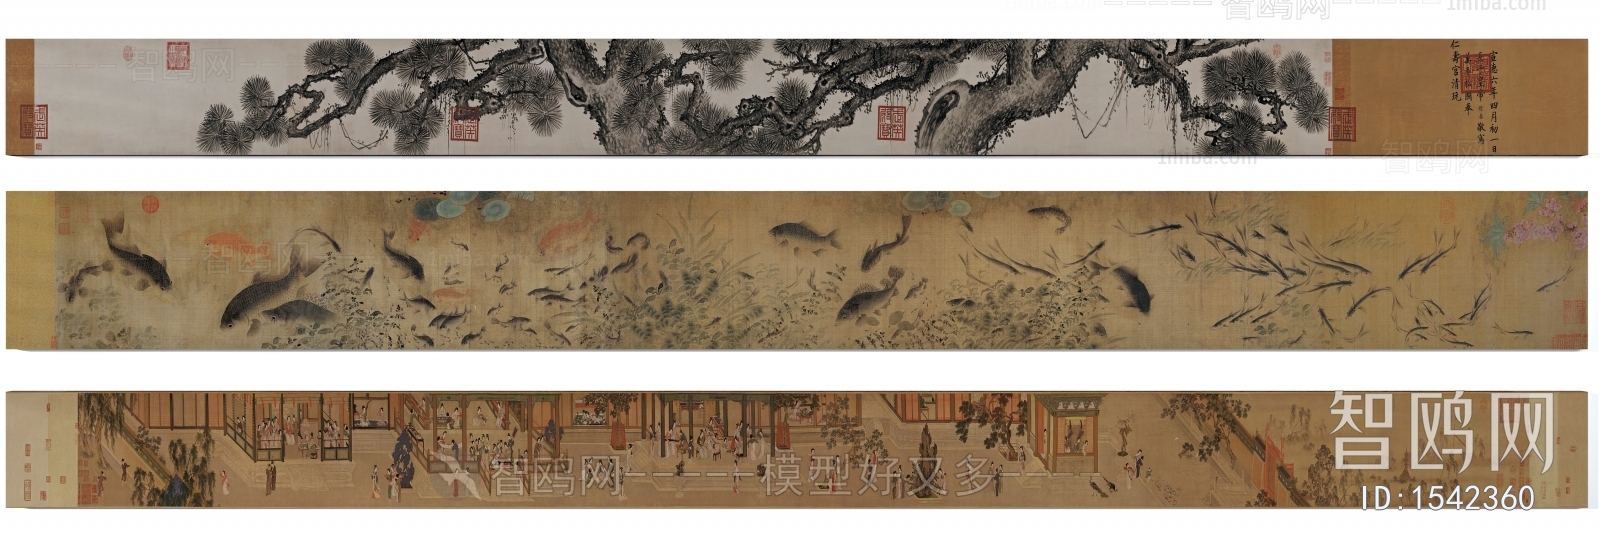 中式传统传世名画